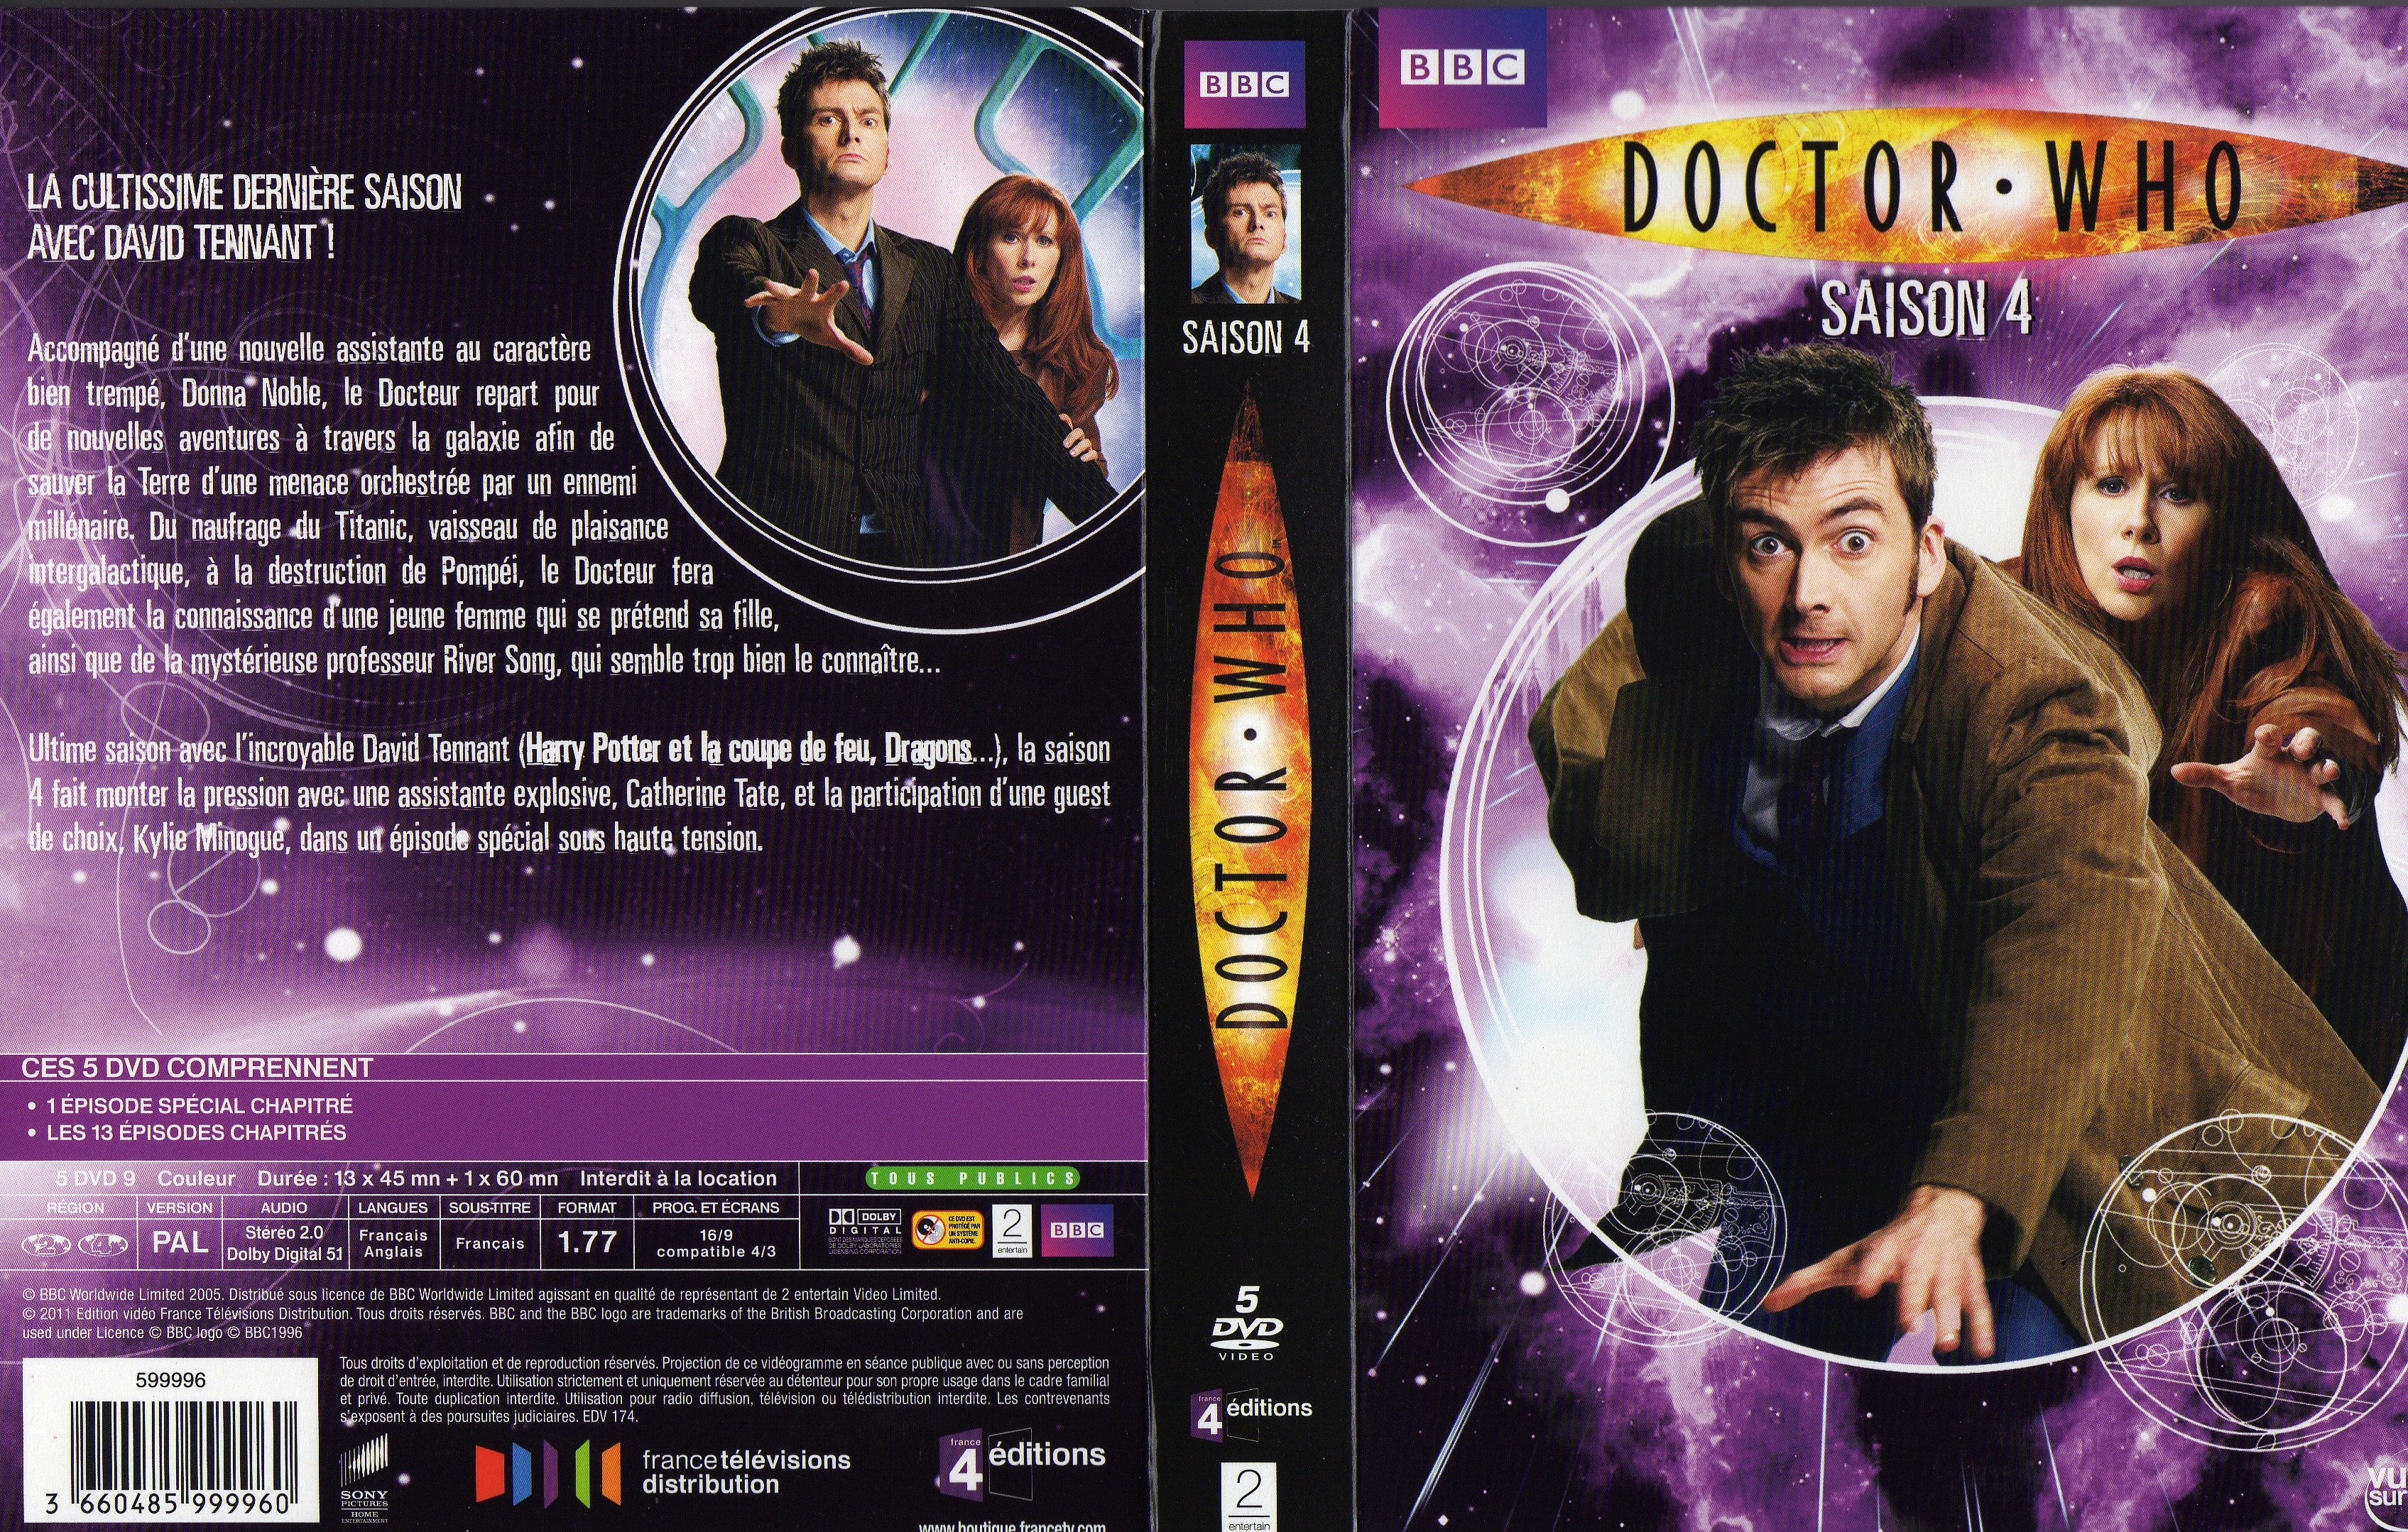 Jaquette DVD Doctor Who Saison 4 COFFRET